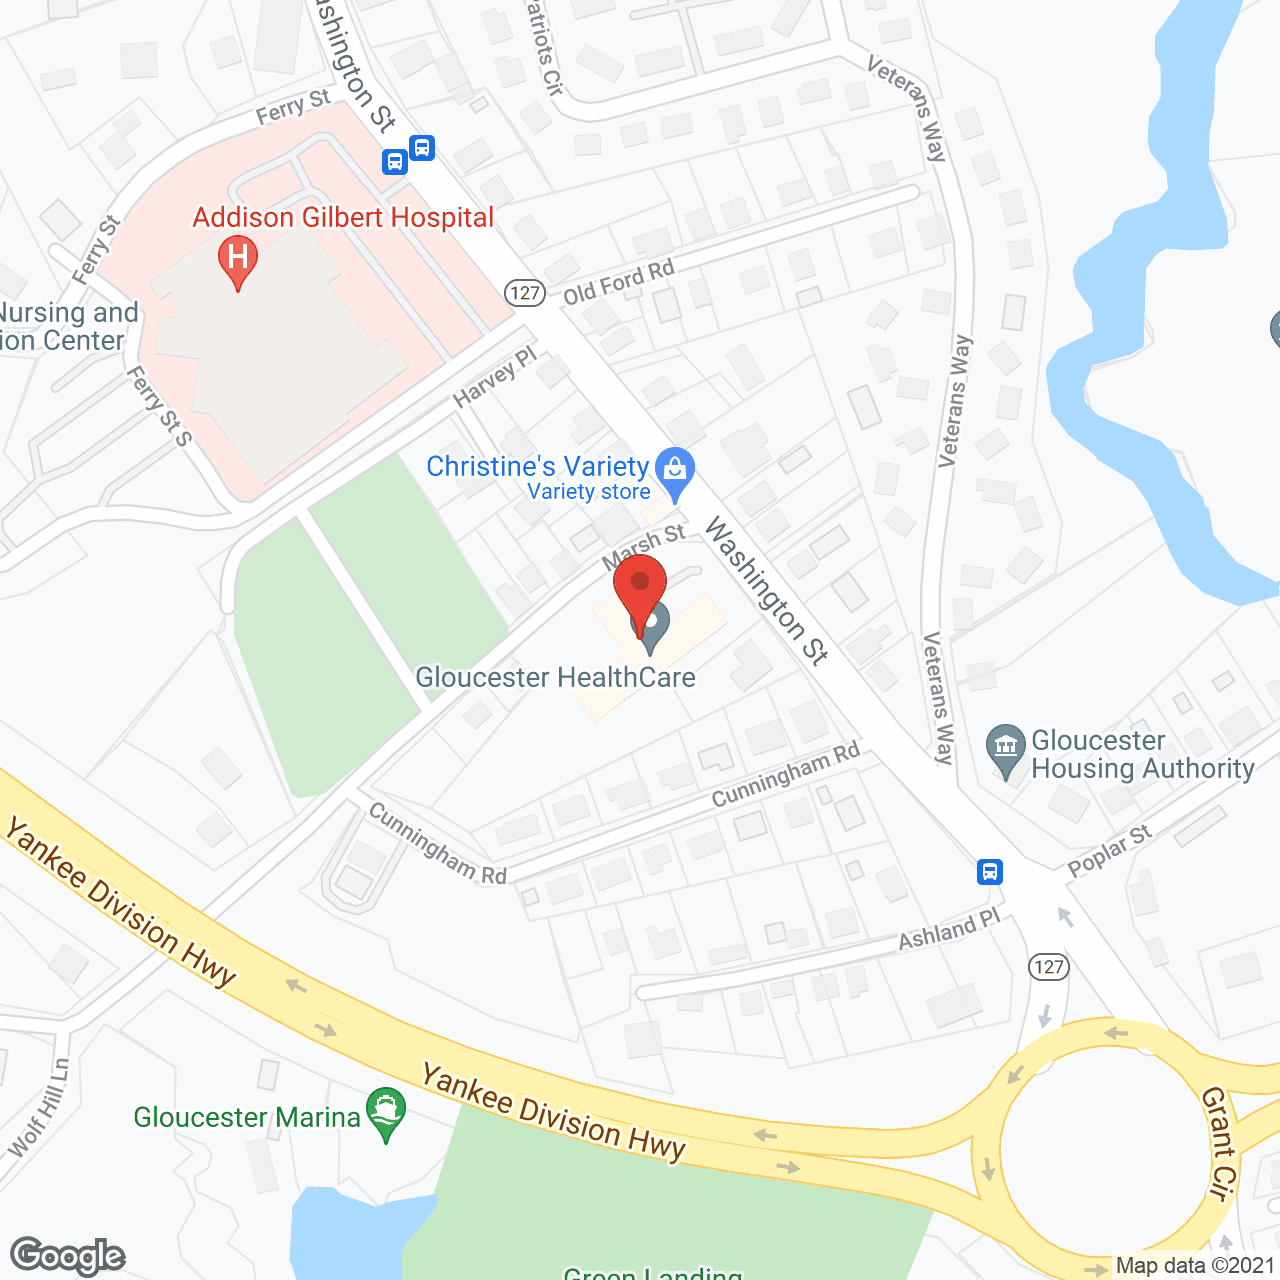 Golden Living Center of Gloucester in google map